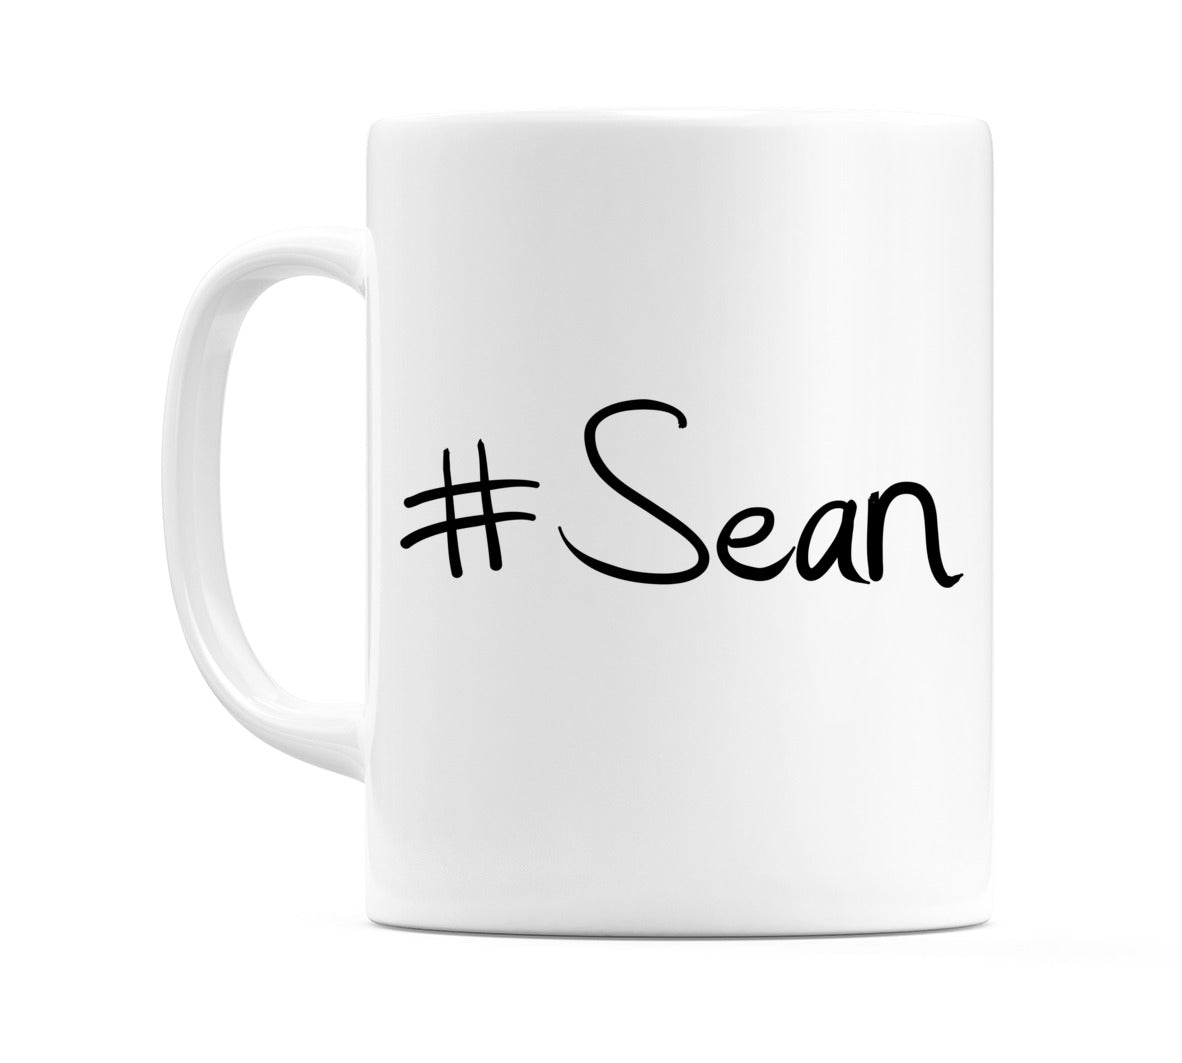 #Sean Mug